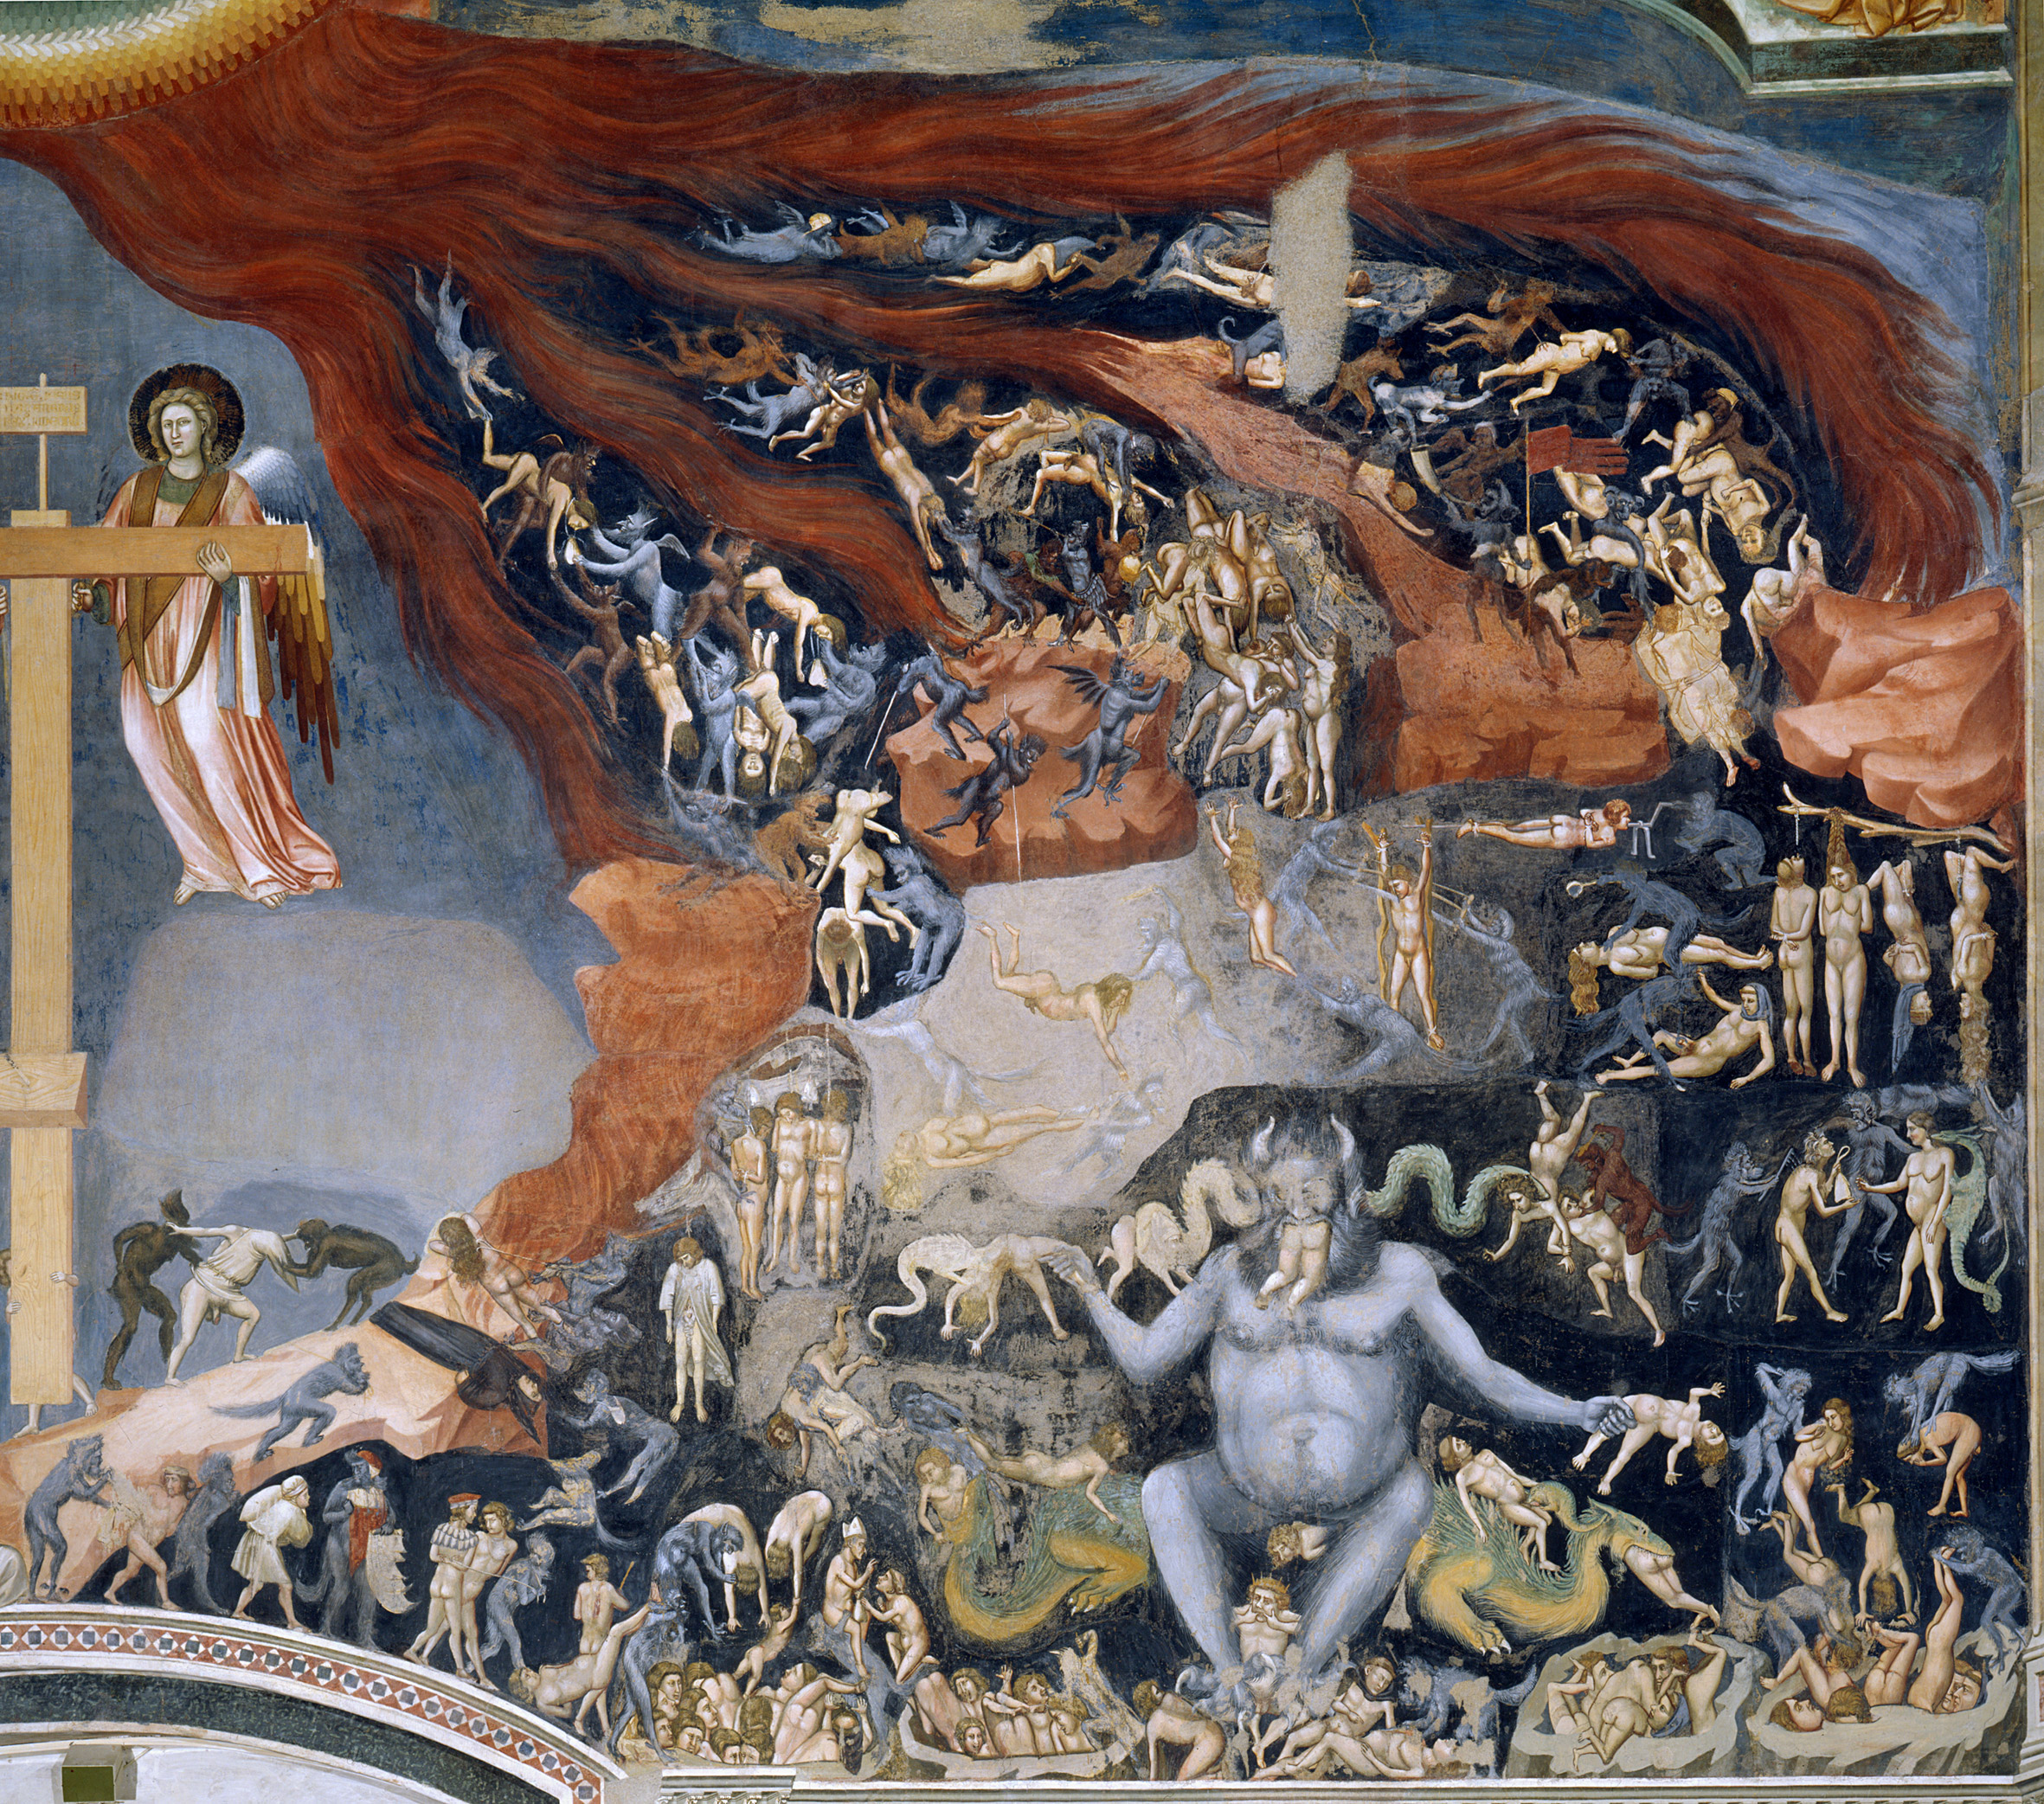 Peklo by Giotto di Bondone - 1305 - 1000 cm × 840 cm 